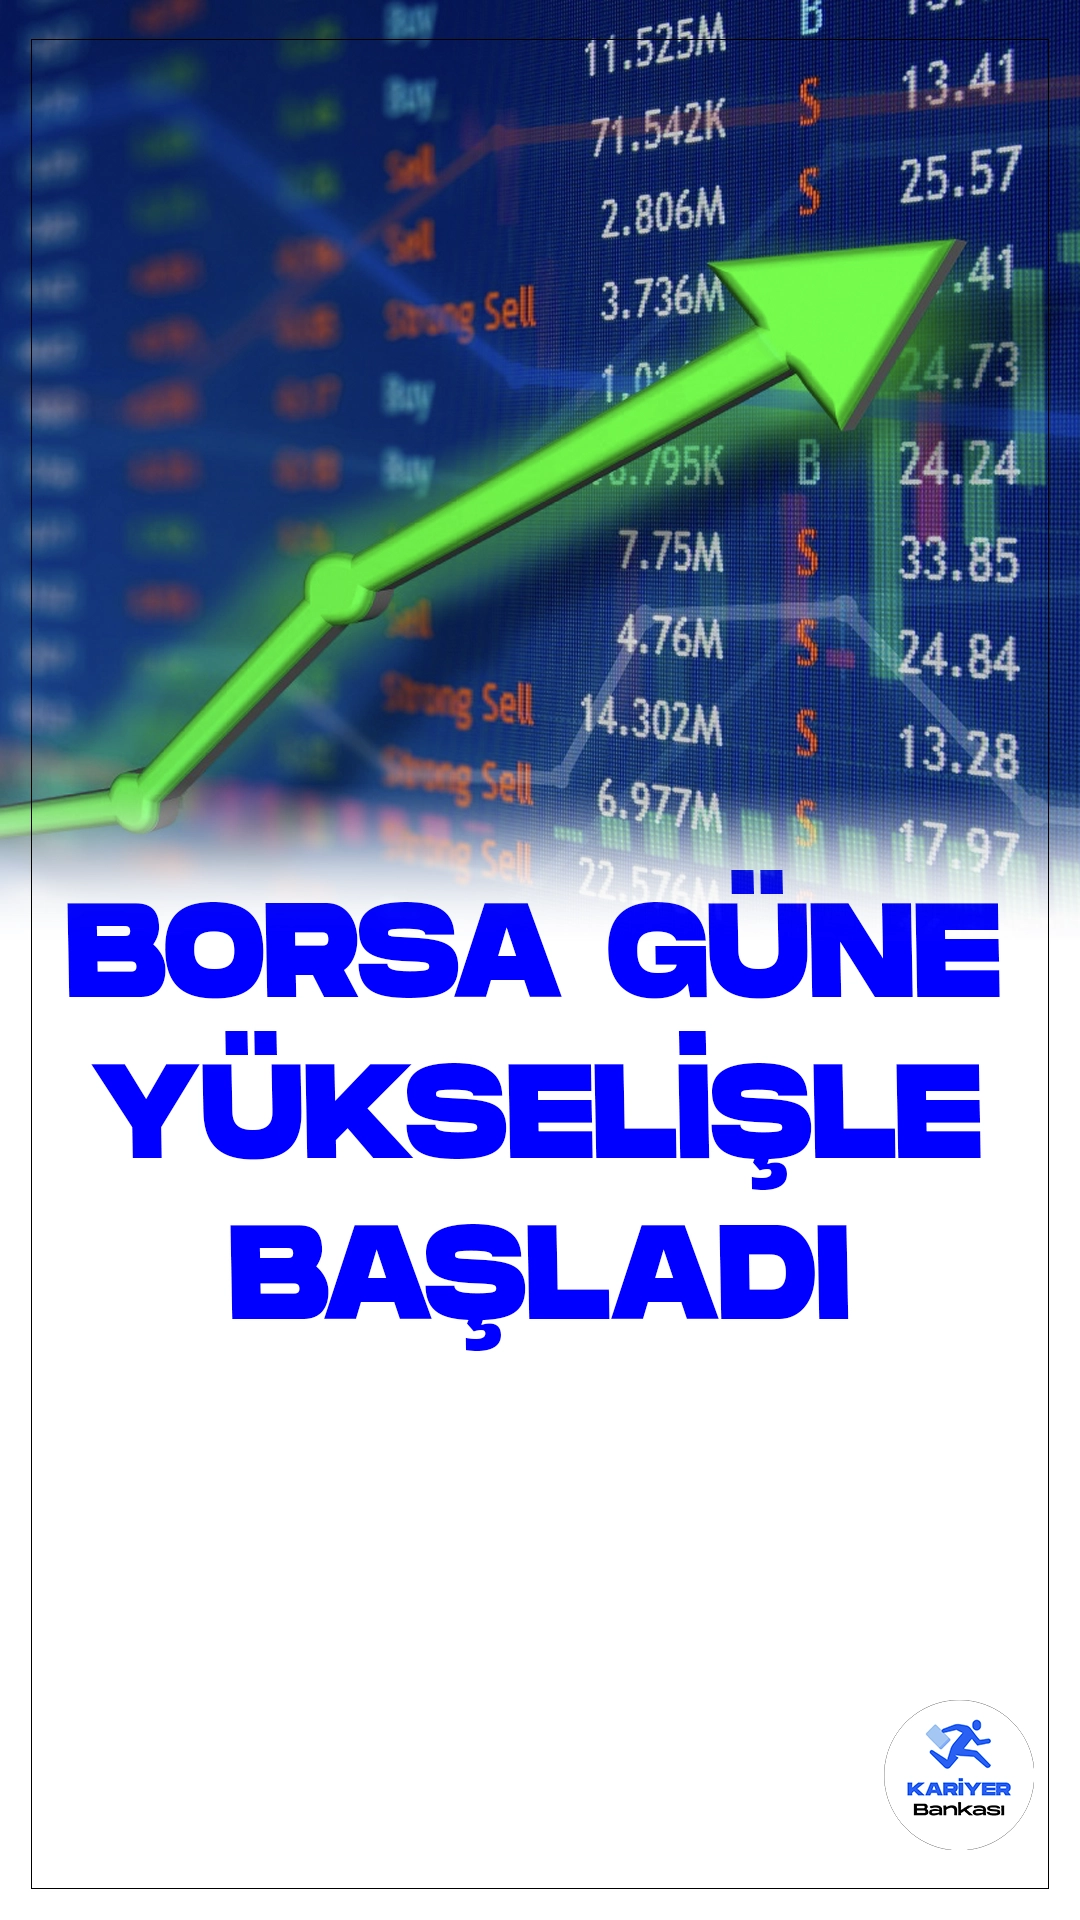 Borsa İstanbul'da BIST 100 Endeksi Güne Yükselişle Başladı.Borsa İstanbul'da işlem gören BIST 100 endeksi, güne yüzde 0,26'lık bir artışla 7.415,27 puandan başladı. Açılışta endeks, önceki kapanışa göre 18,93 puan artarak ve yüzde 0,26 değer kazanarak 7.415,27 puana ulaştı.